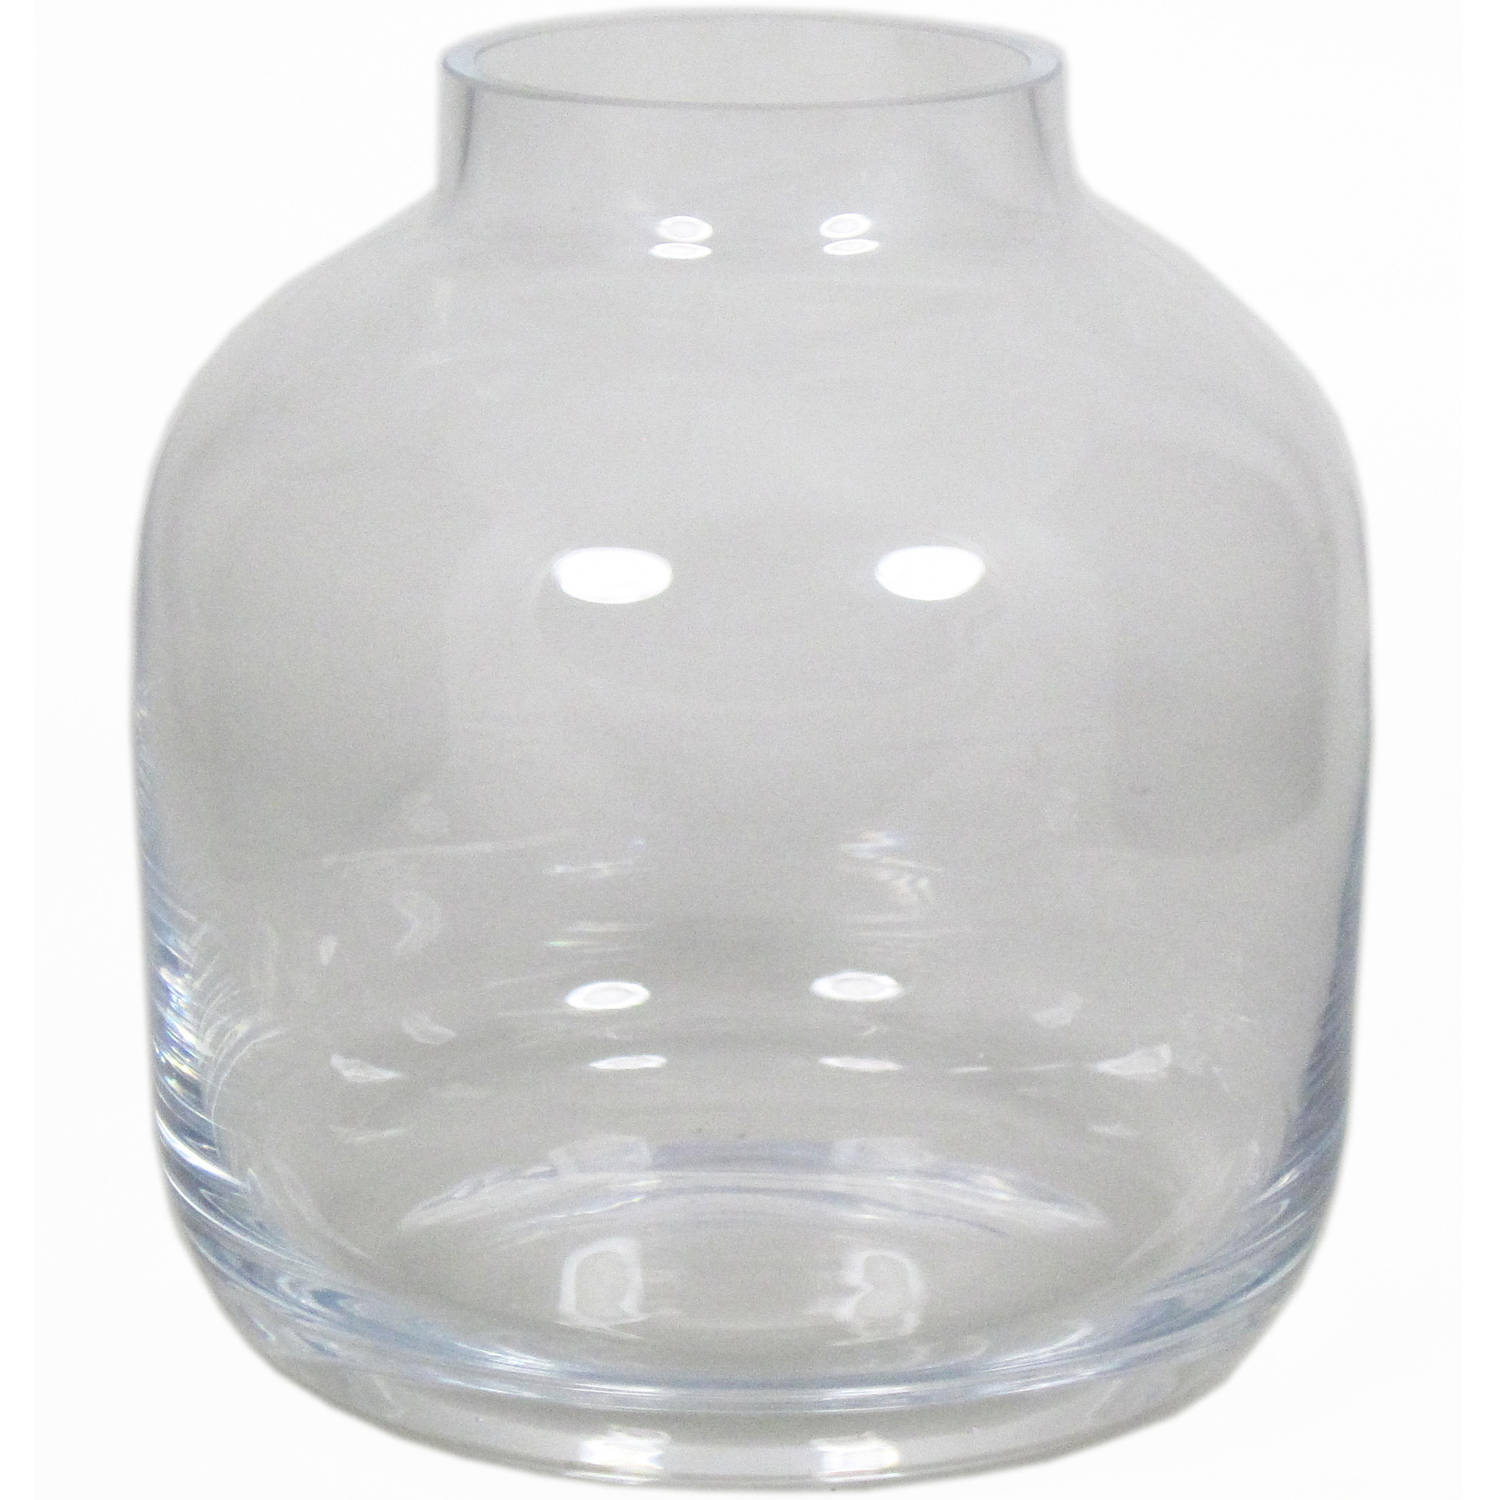 plus vervaldatum Beschrijvend Glazen vaas/vazen Mensa 19 x 21 cm - Vazen | Blokker